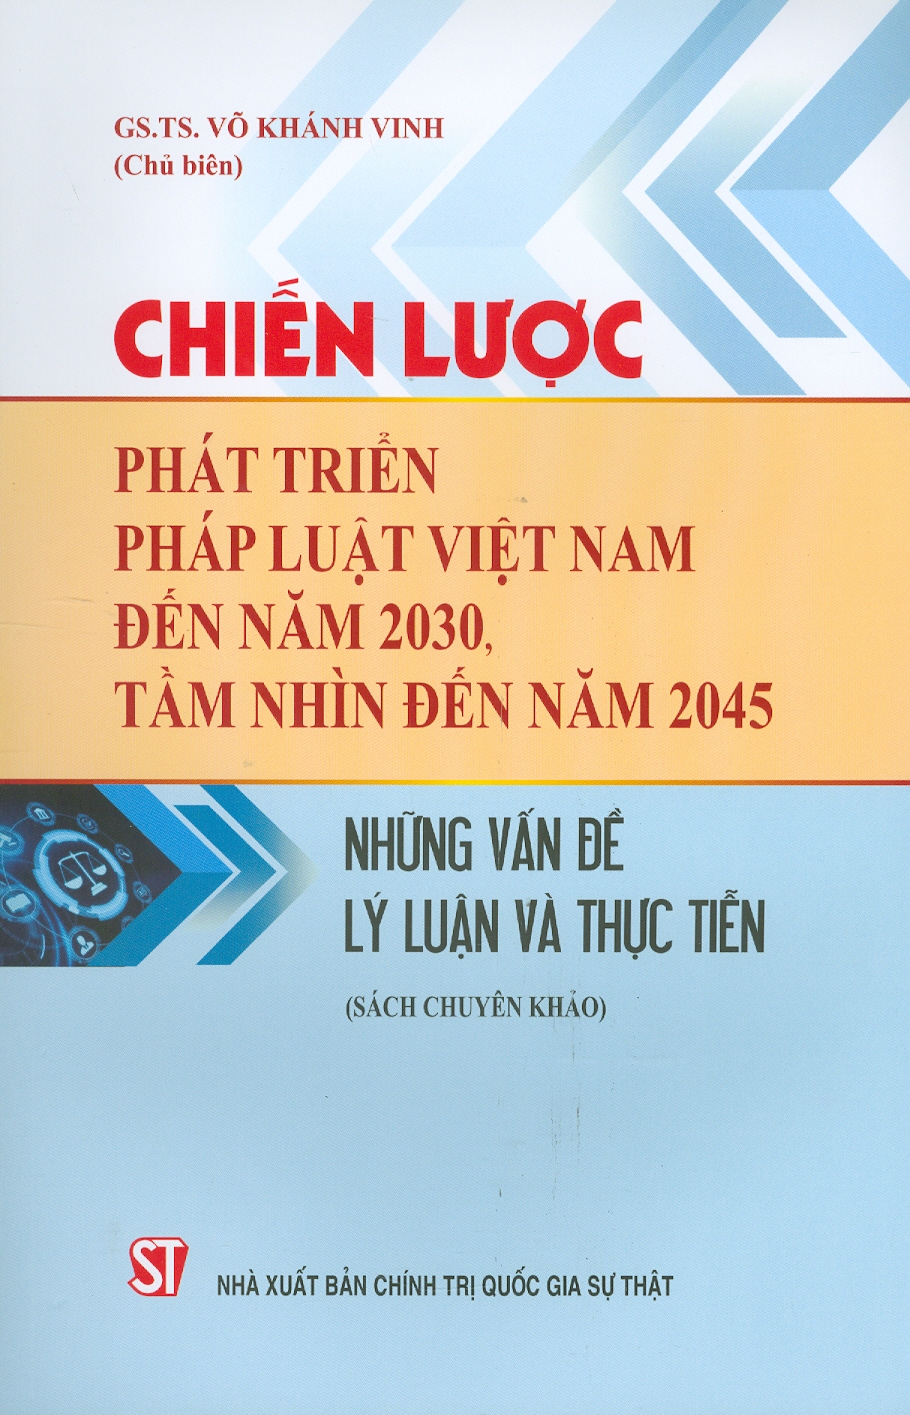 Chiến Lược Phát Triển Pháp Luật Việt Nam Đến Năm 2030, Tầm Nhìn Đến Năm 2045 - Những Vấn Đề Lý Luận Và Thực Tiễn (Sách chuyên khảo) (Bản giới hạn, in 100 bản)